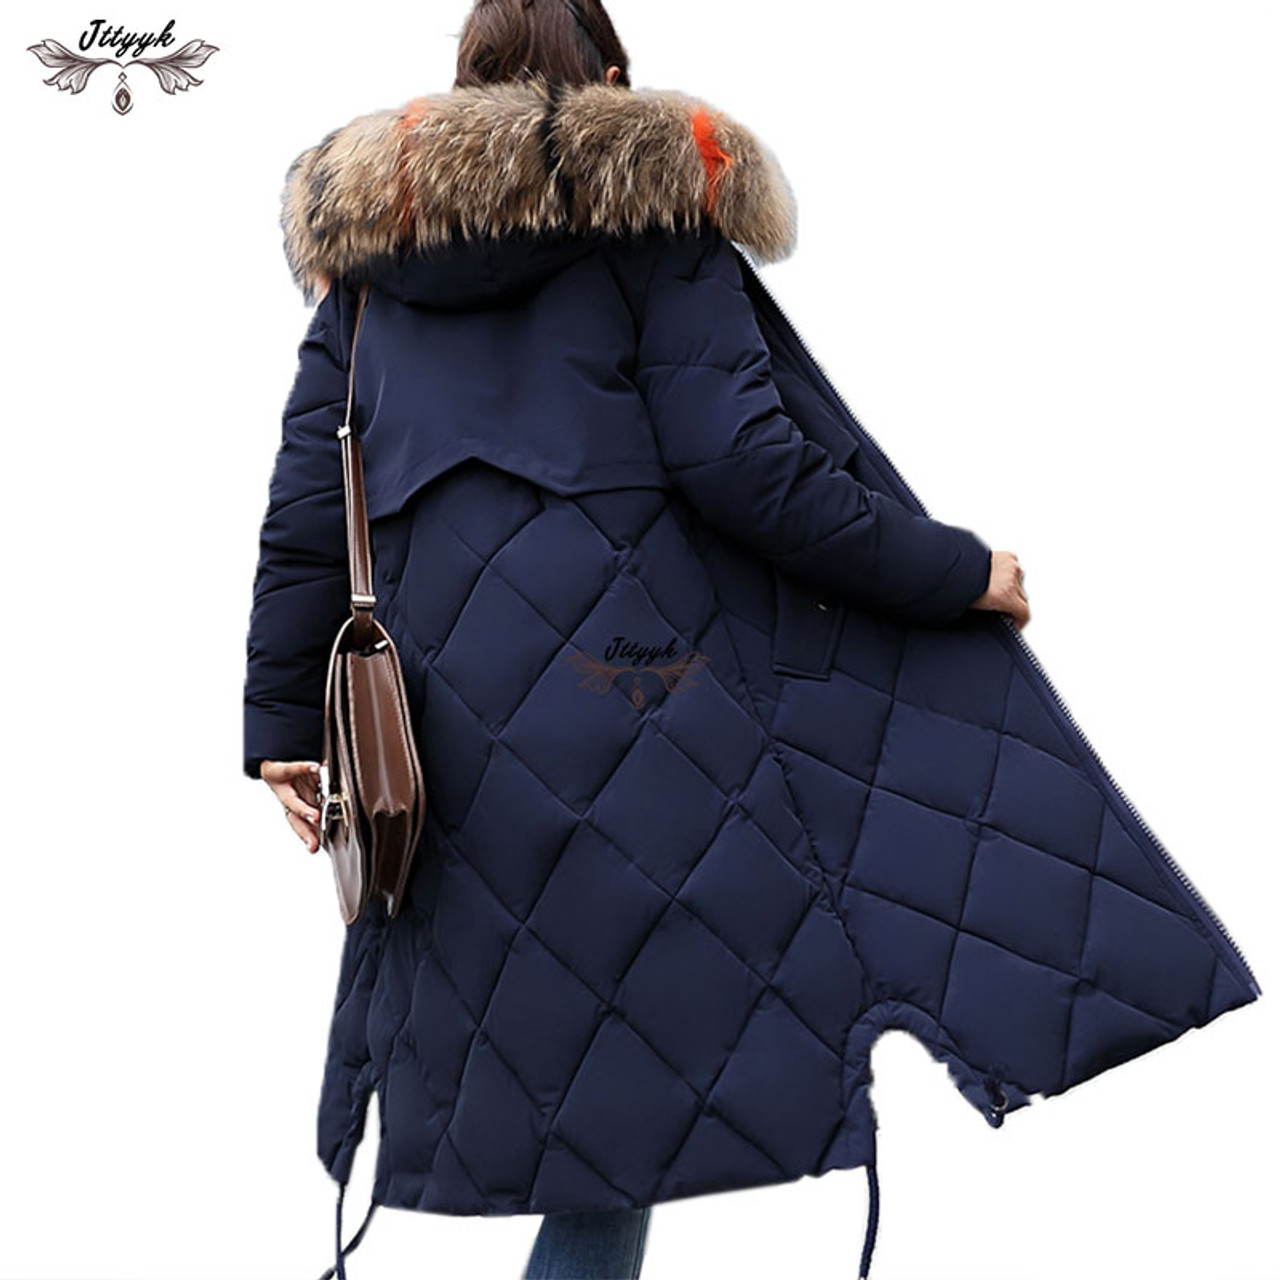 Yoyorule Women Faux Fur Ladies Super Warm Supple Waistcoat Jacket Winter Coat Outwear